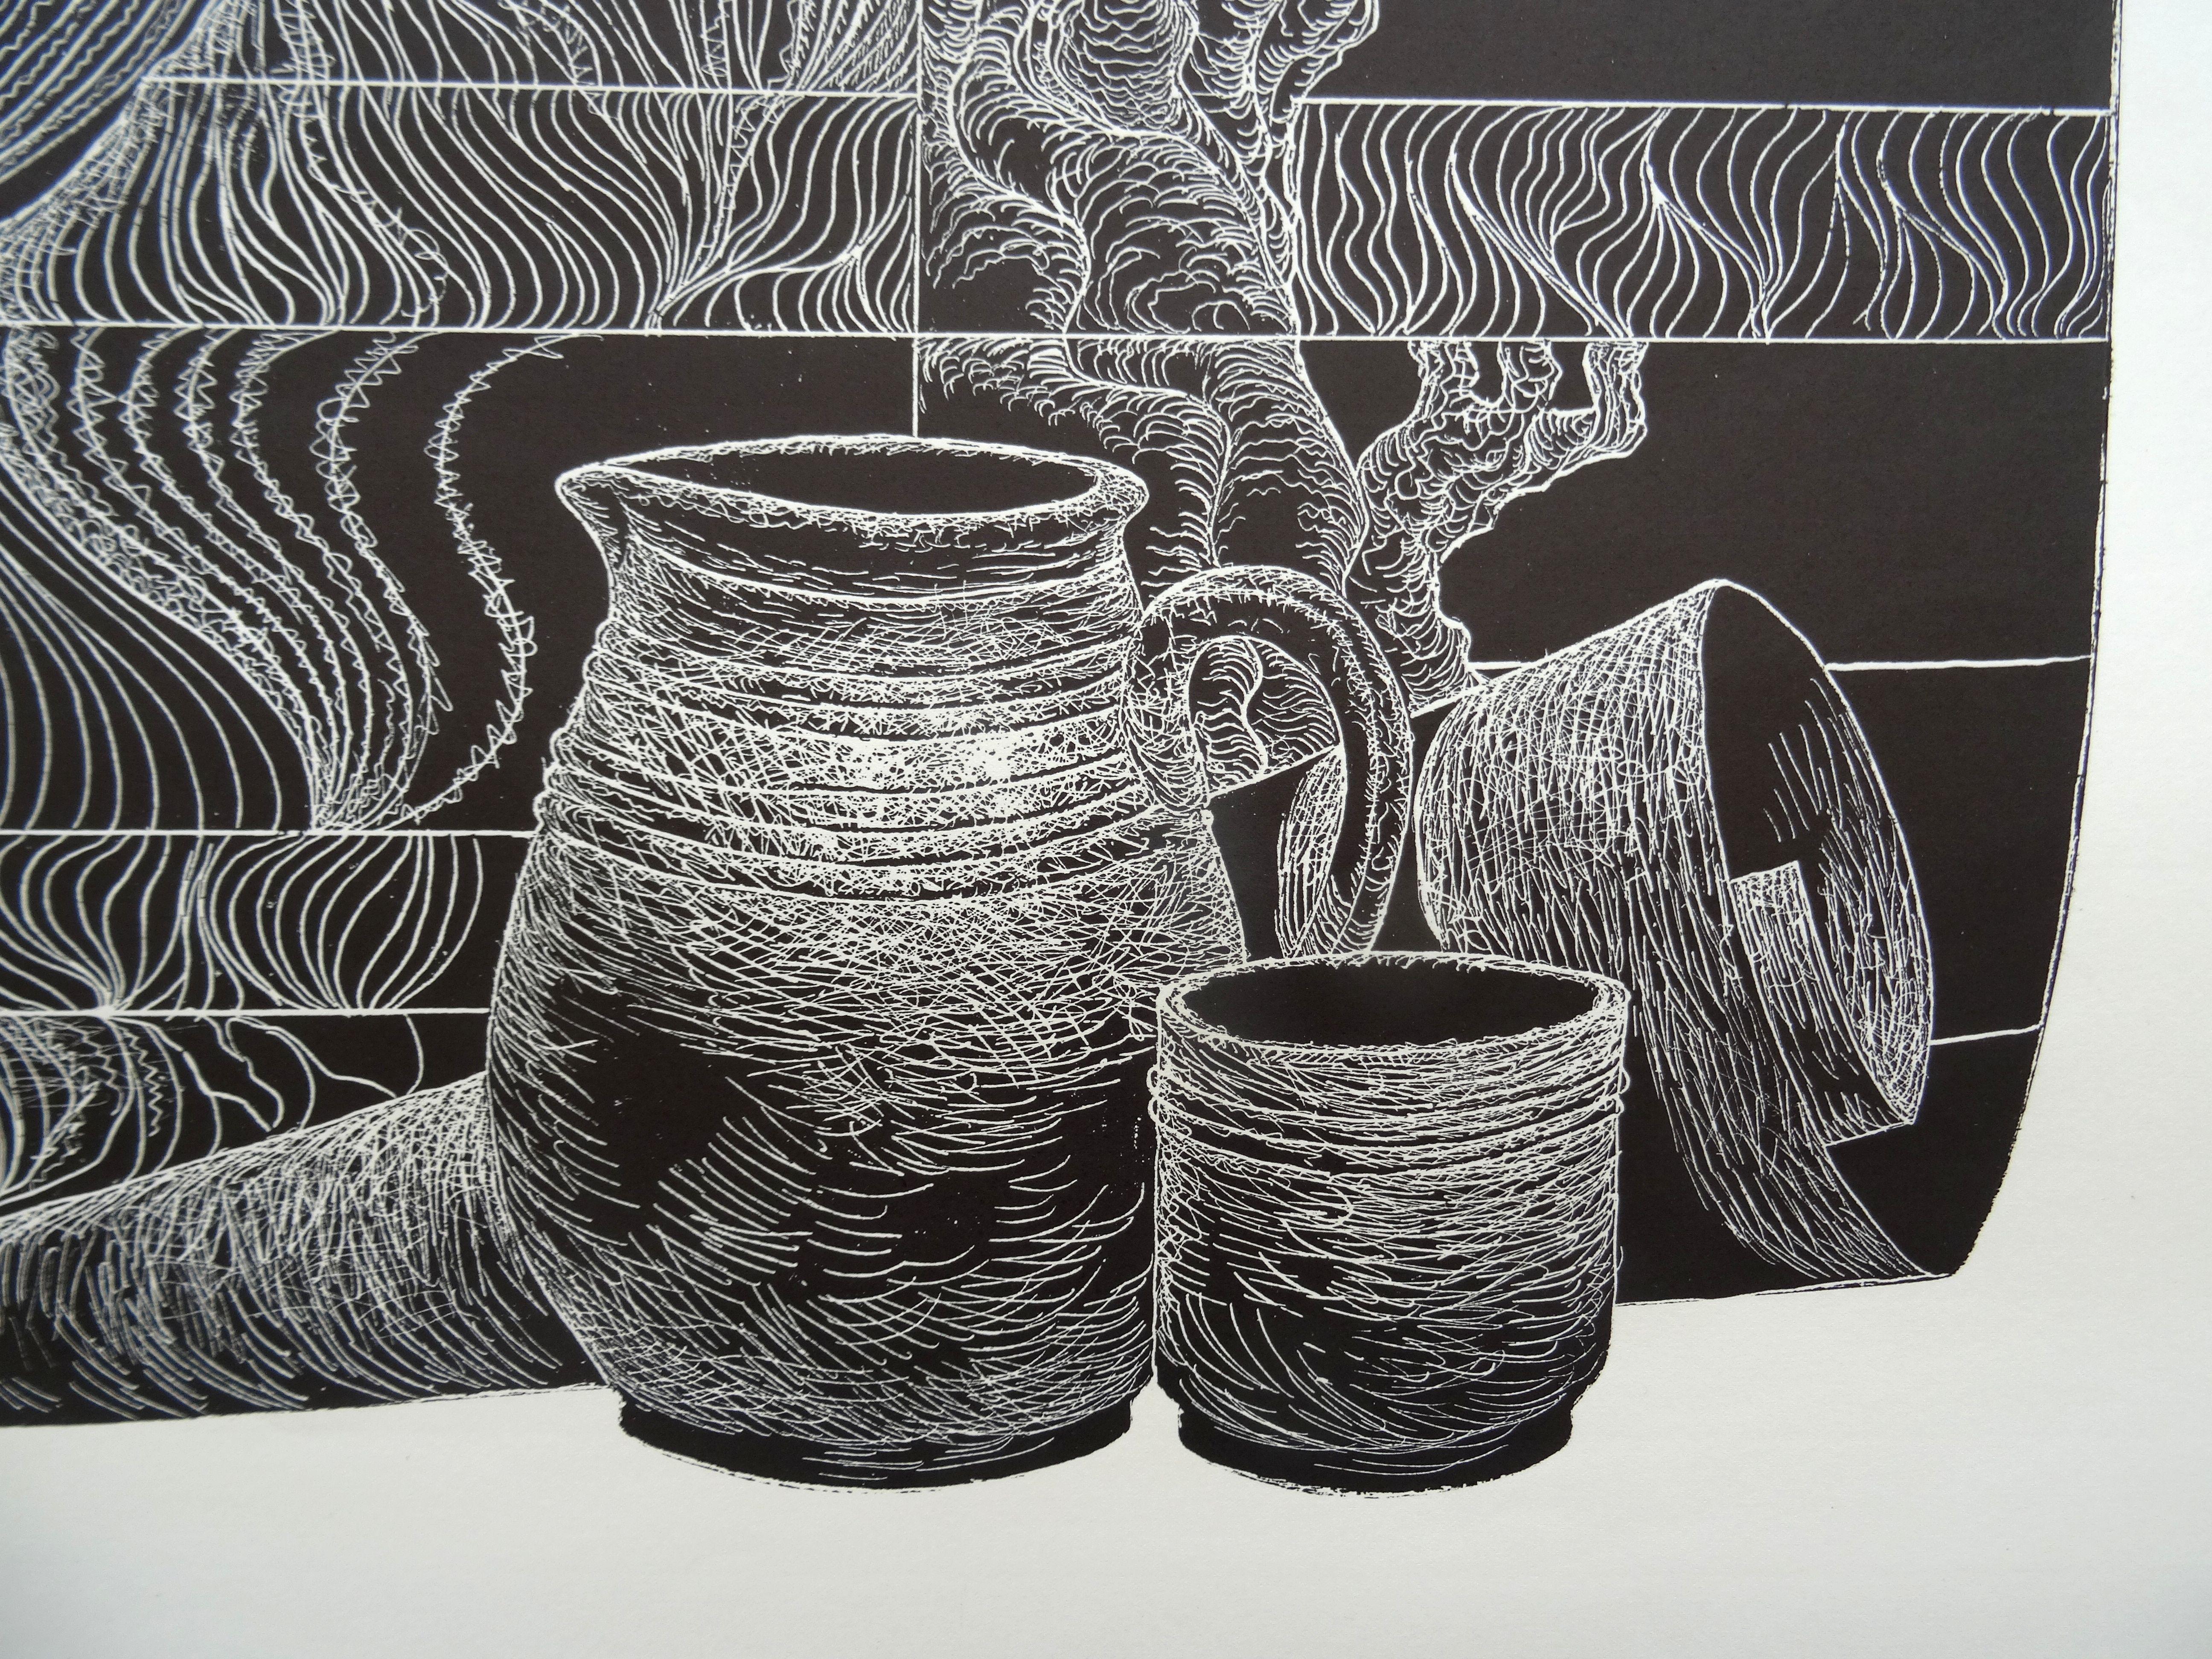 Rye spring. 1980, papier, linogravure, taille de l'impression 50x65 cm ; total 70x80 cm - Print de Dainis Rozkalns